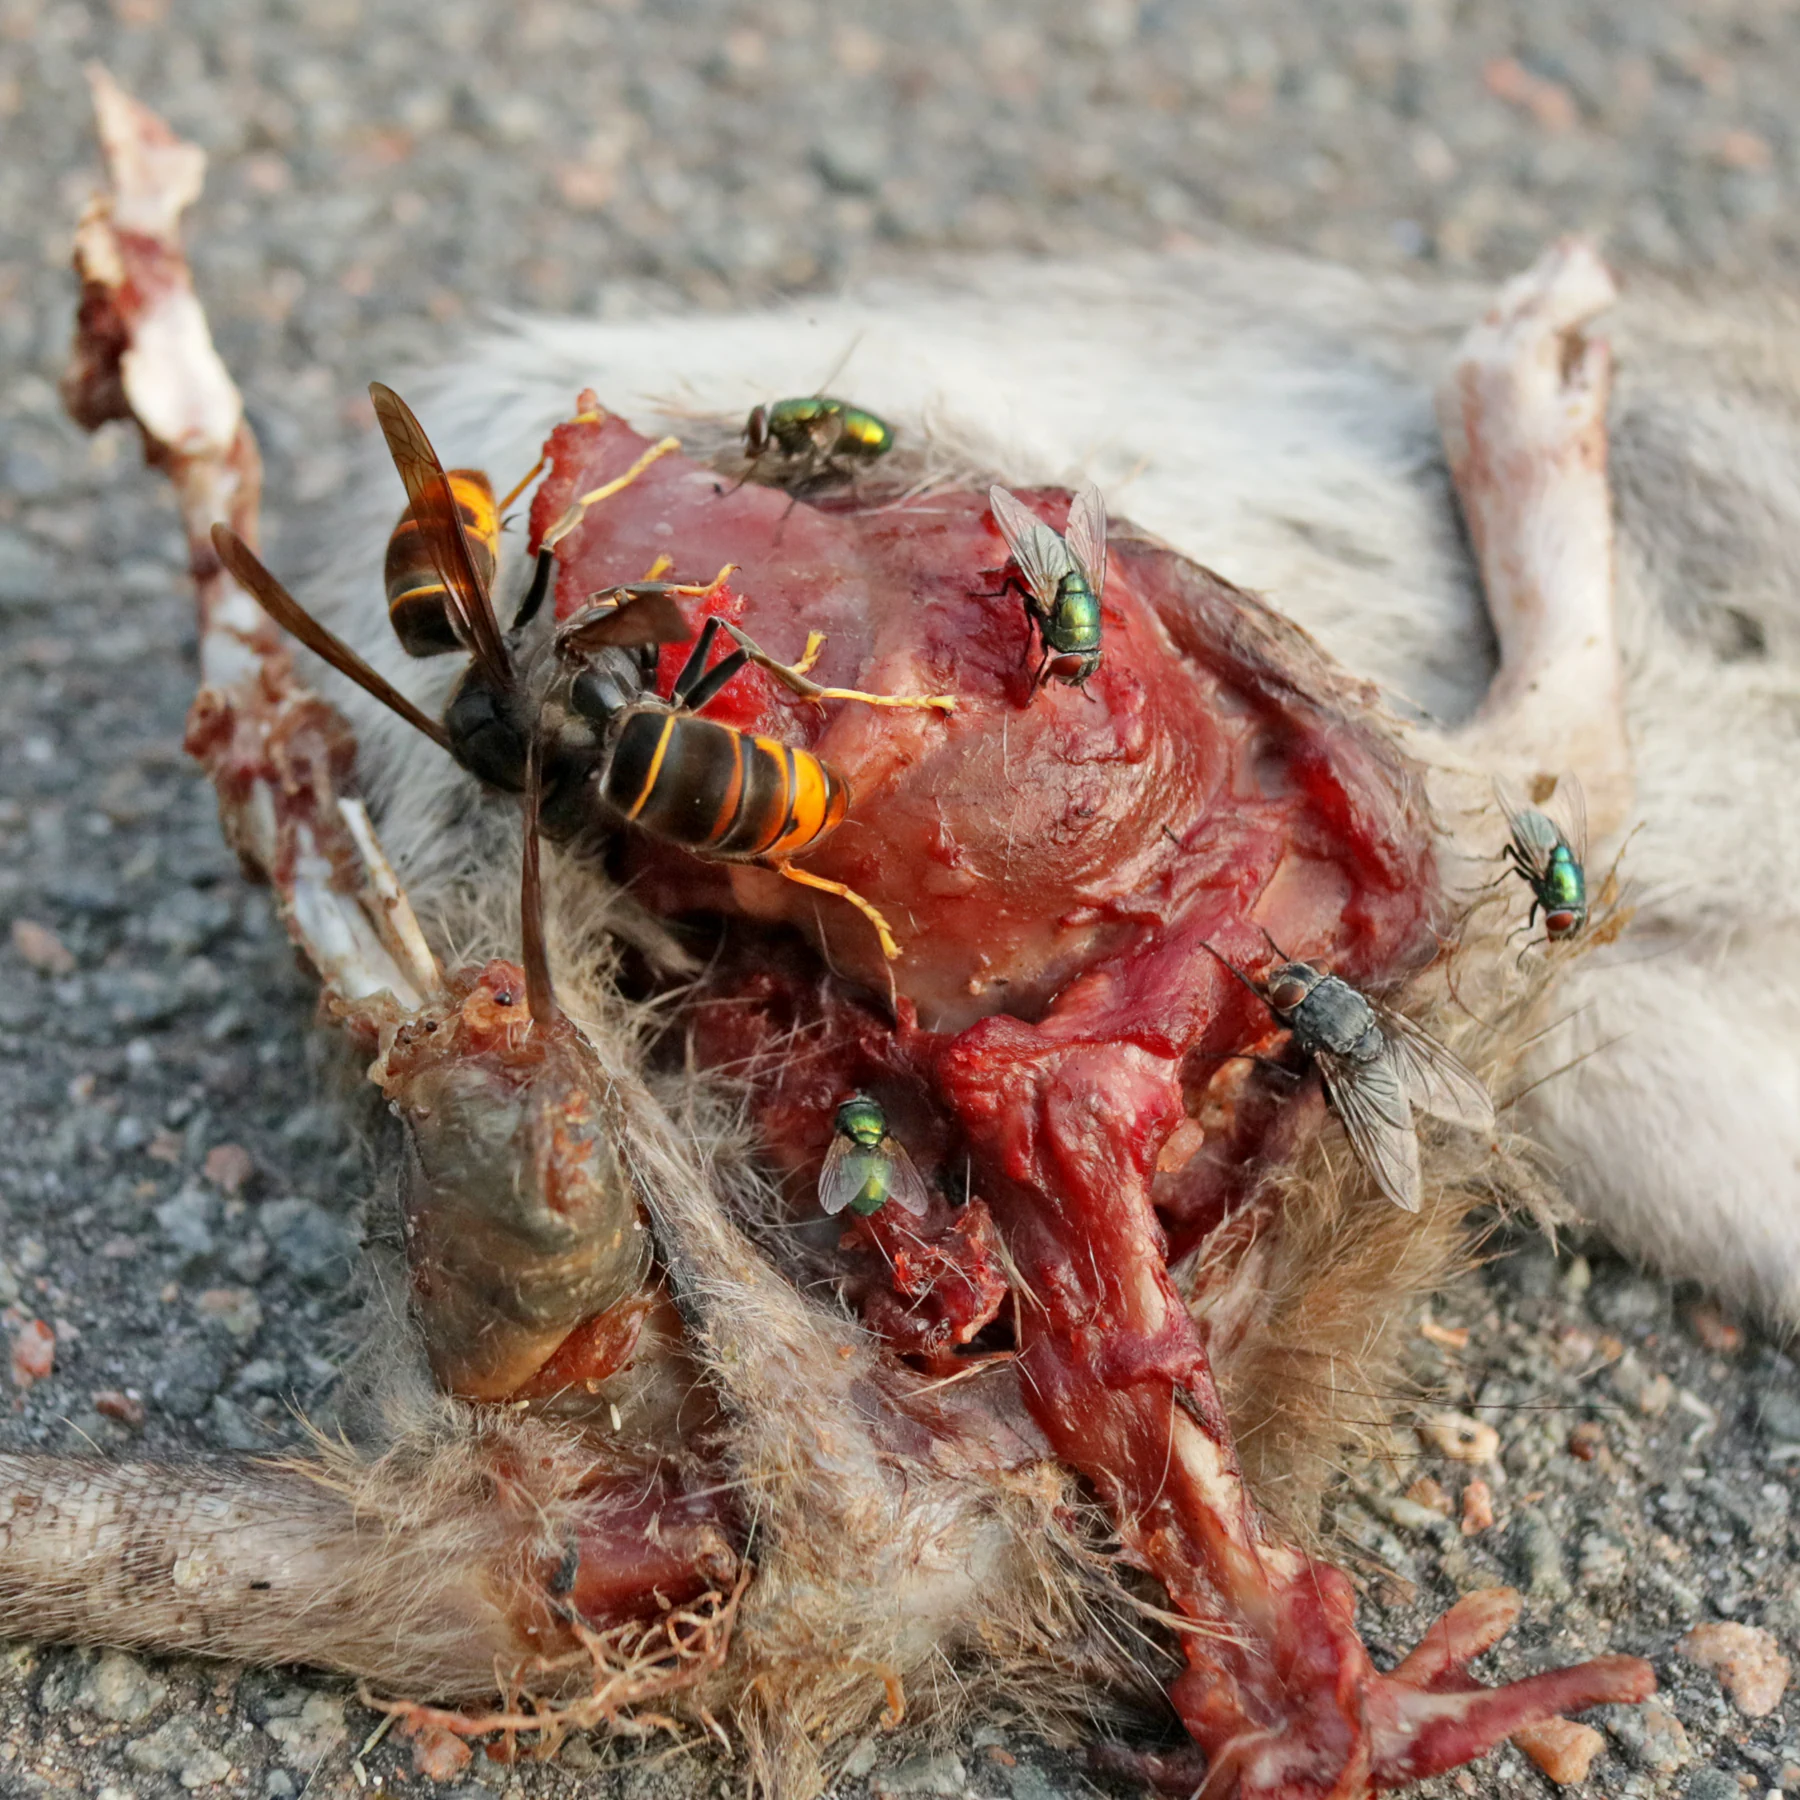 Avispones asiáticos y moscas se comen una rata muerta